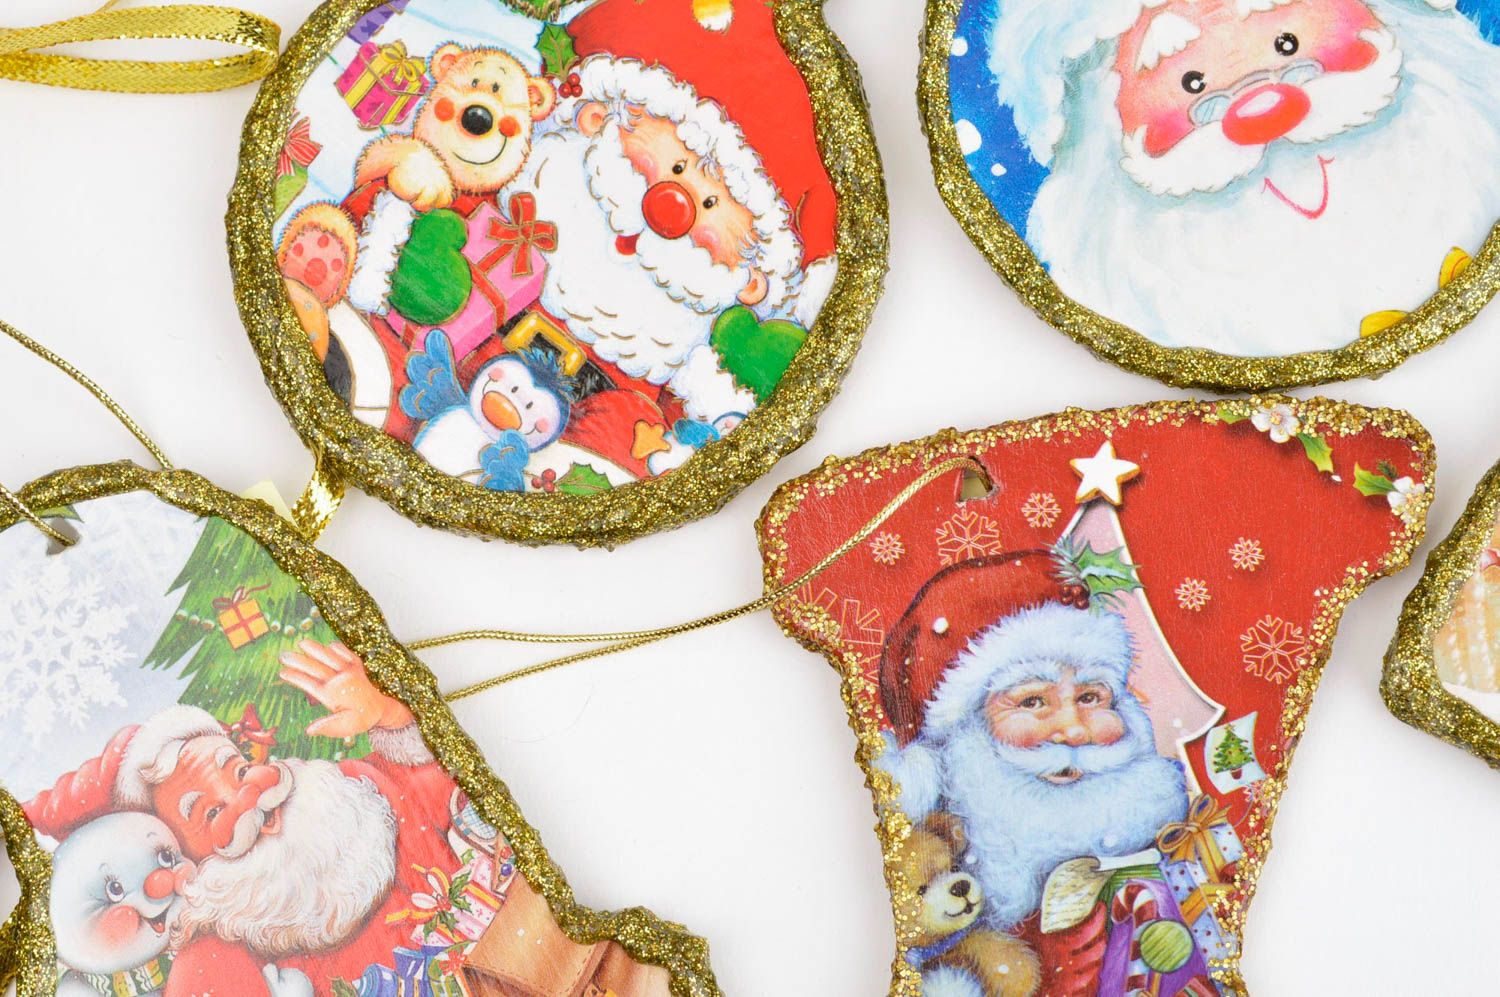 Decoraciones navideñas artesanales 5 colgantes decorativos regalos originales foto 4